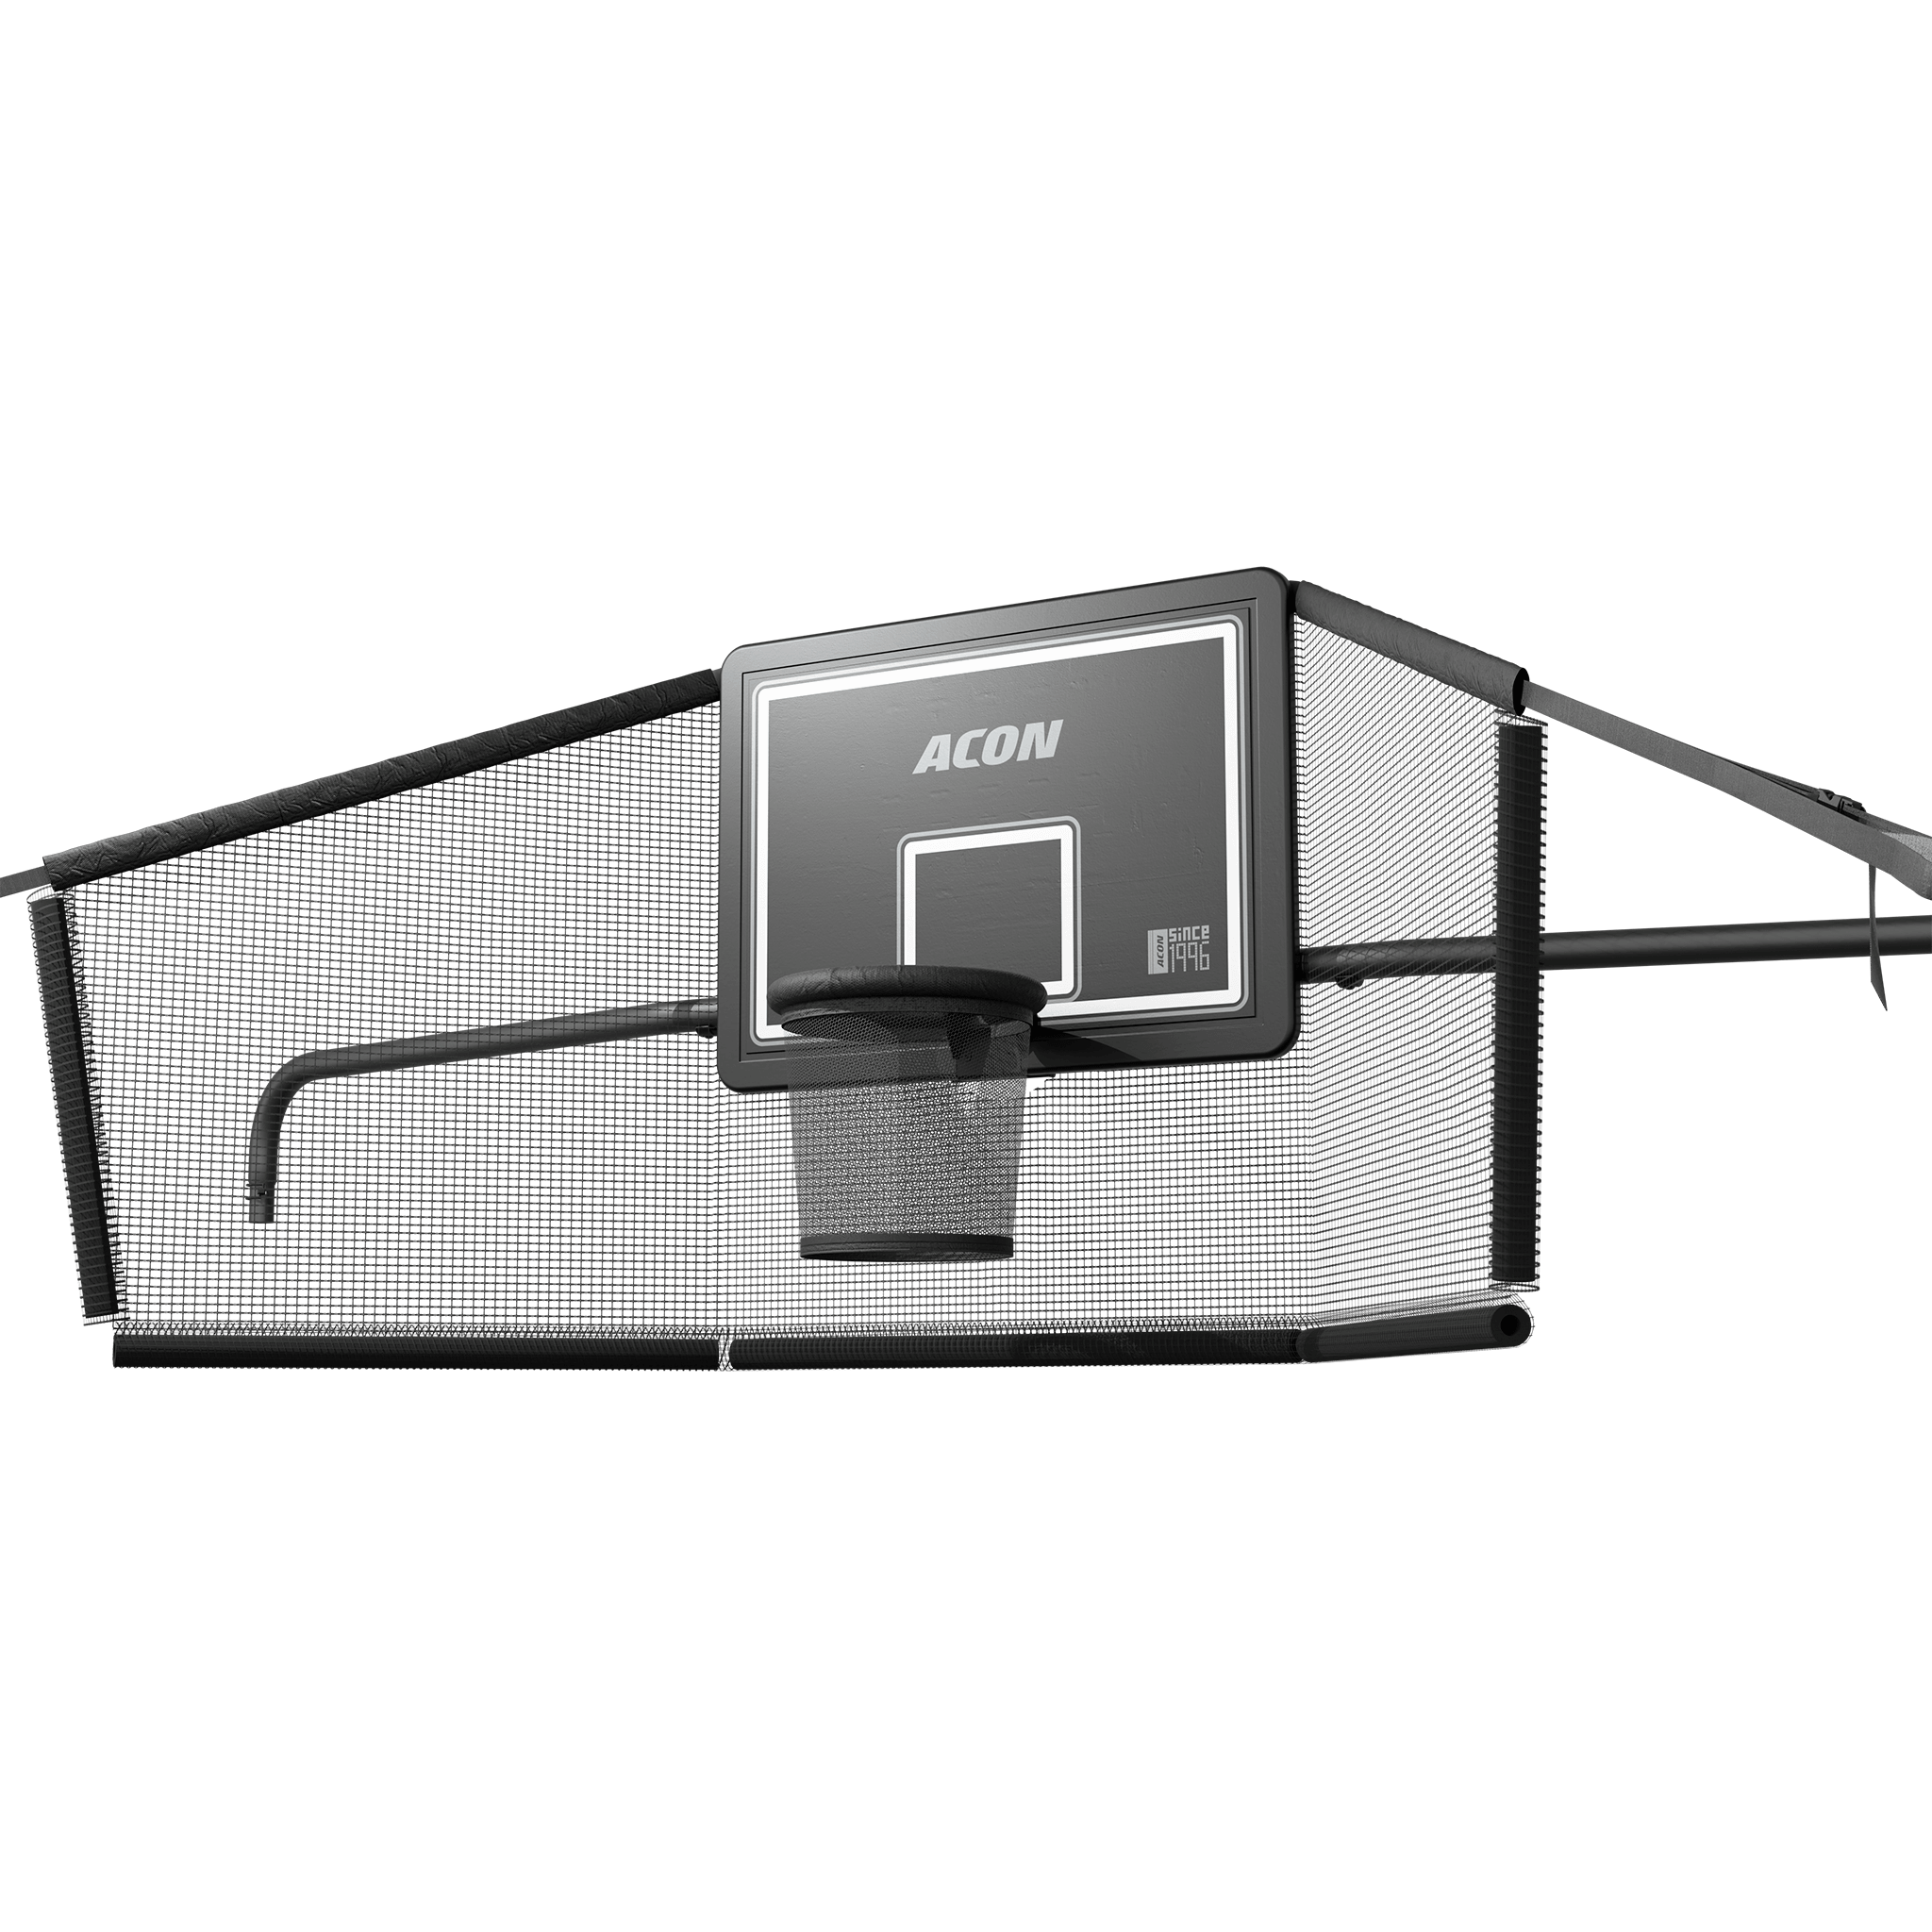 ACON X basketkorg med bakre nät för 17ft rektangulär studsmatta.